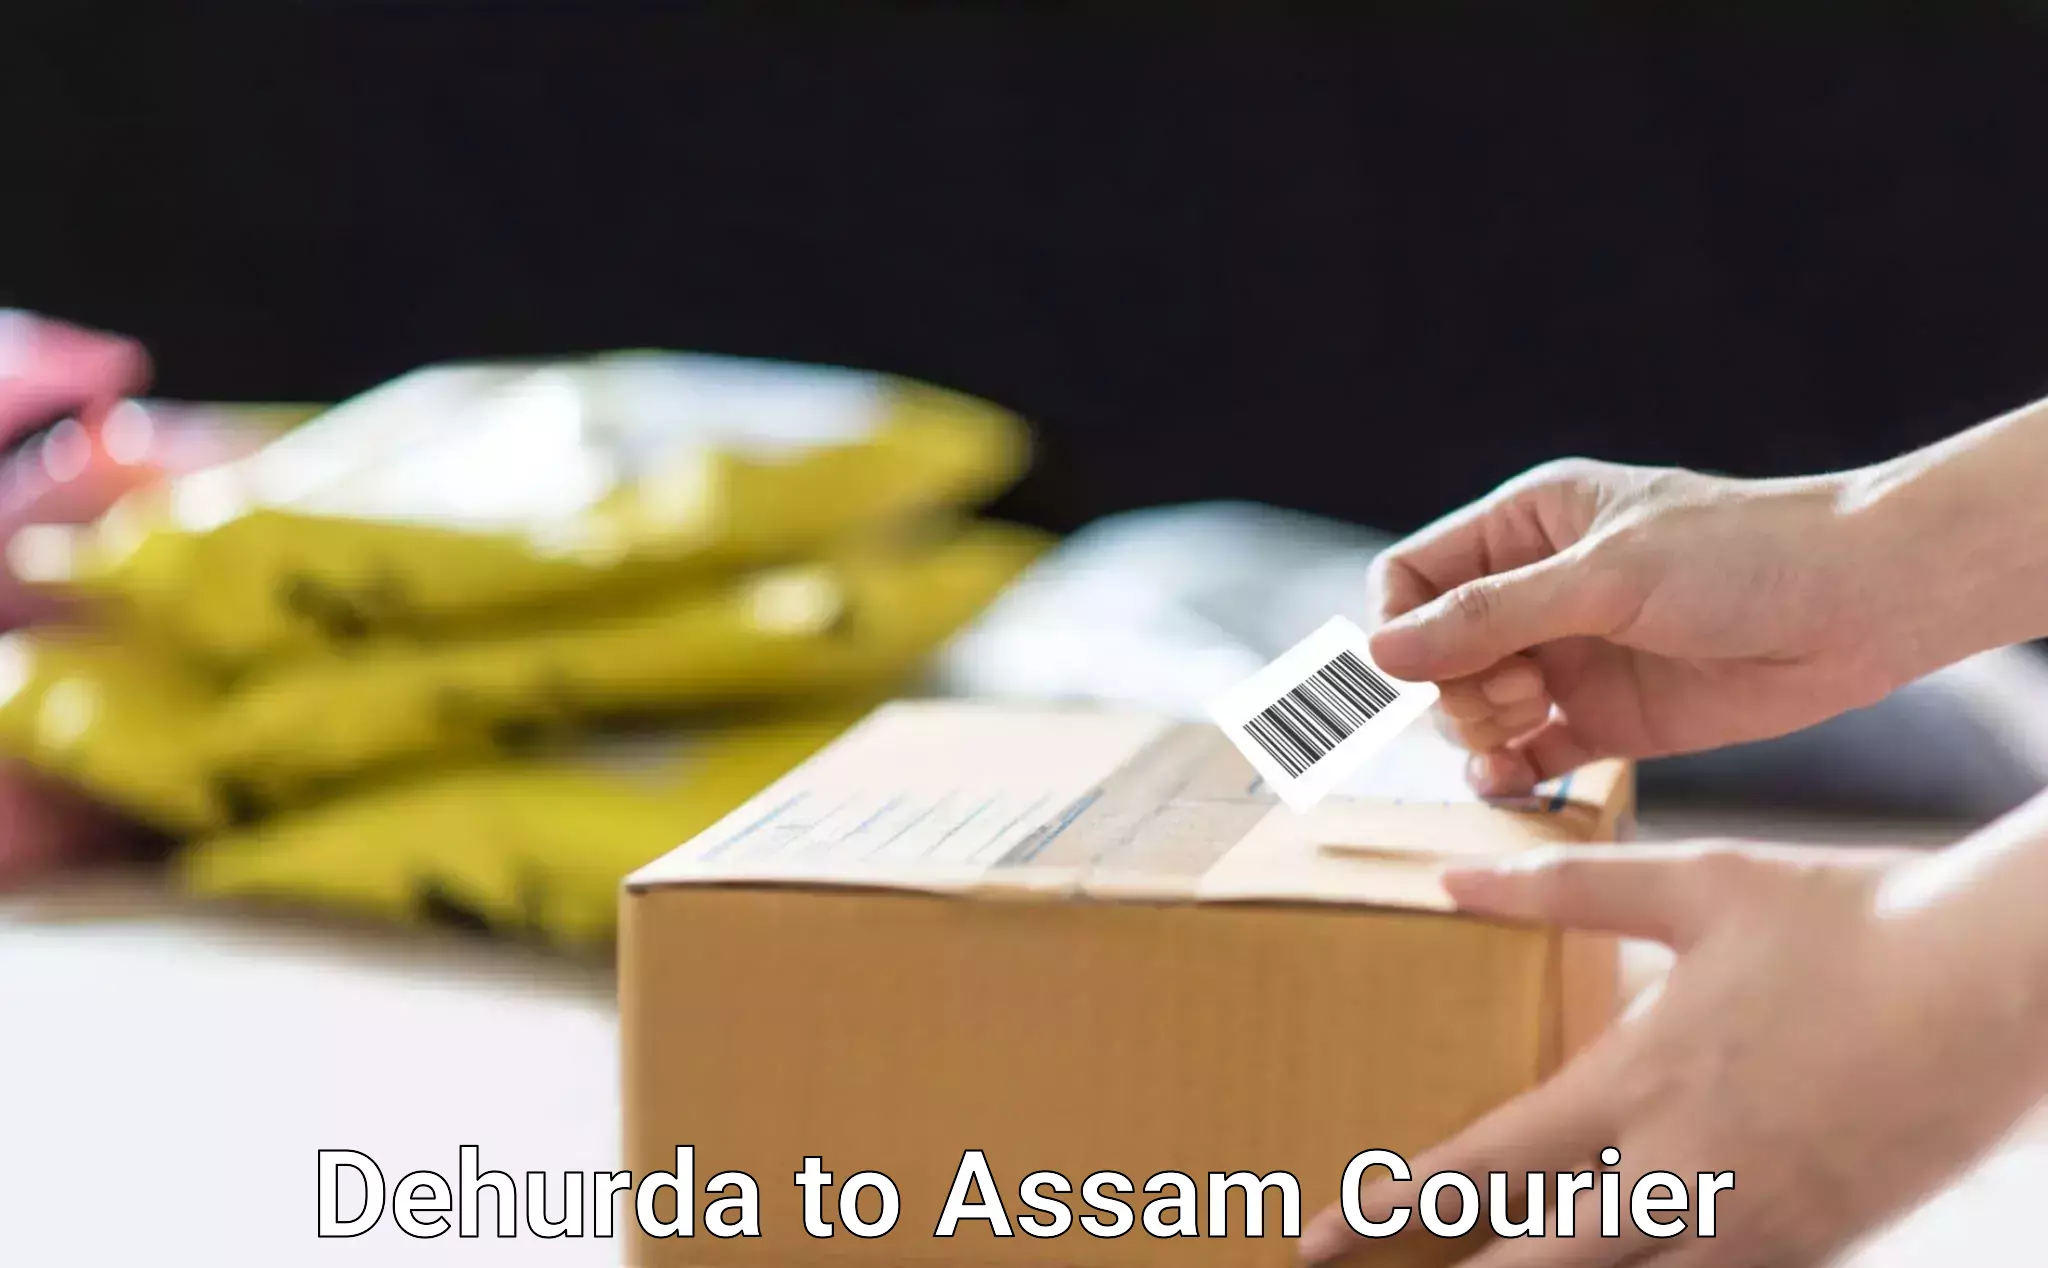 Premium courier services Dehurda to Assam